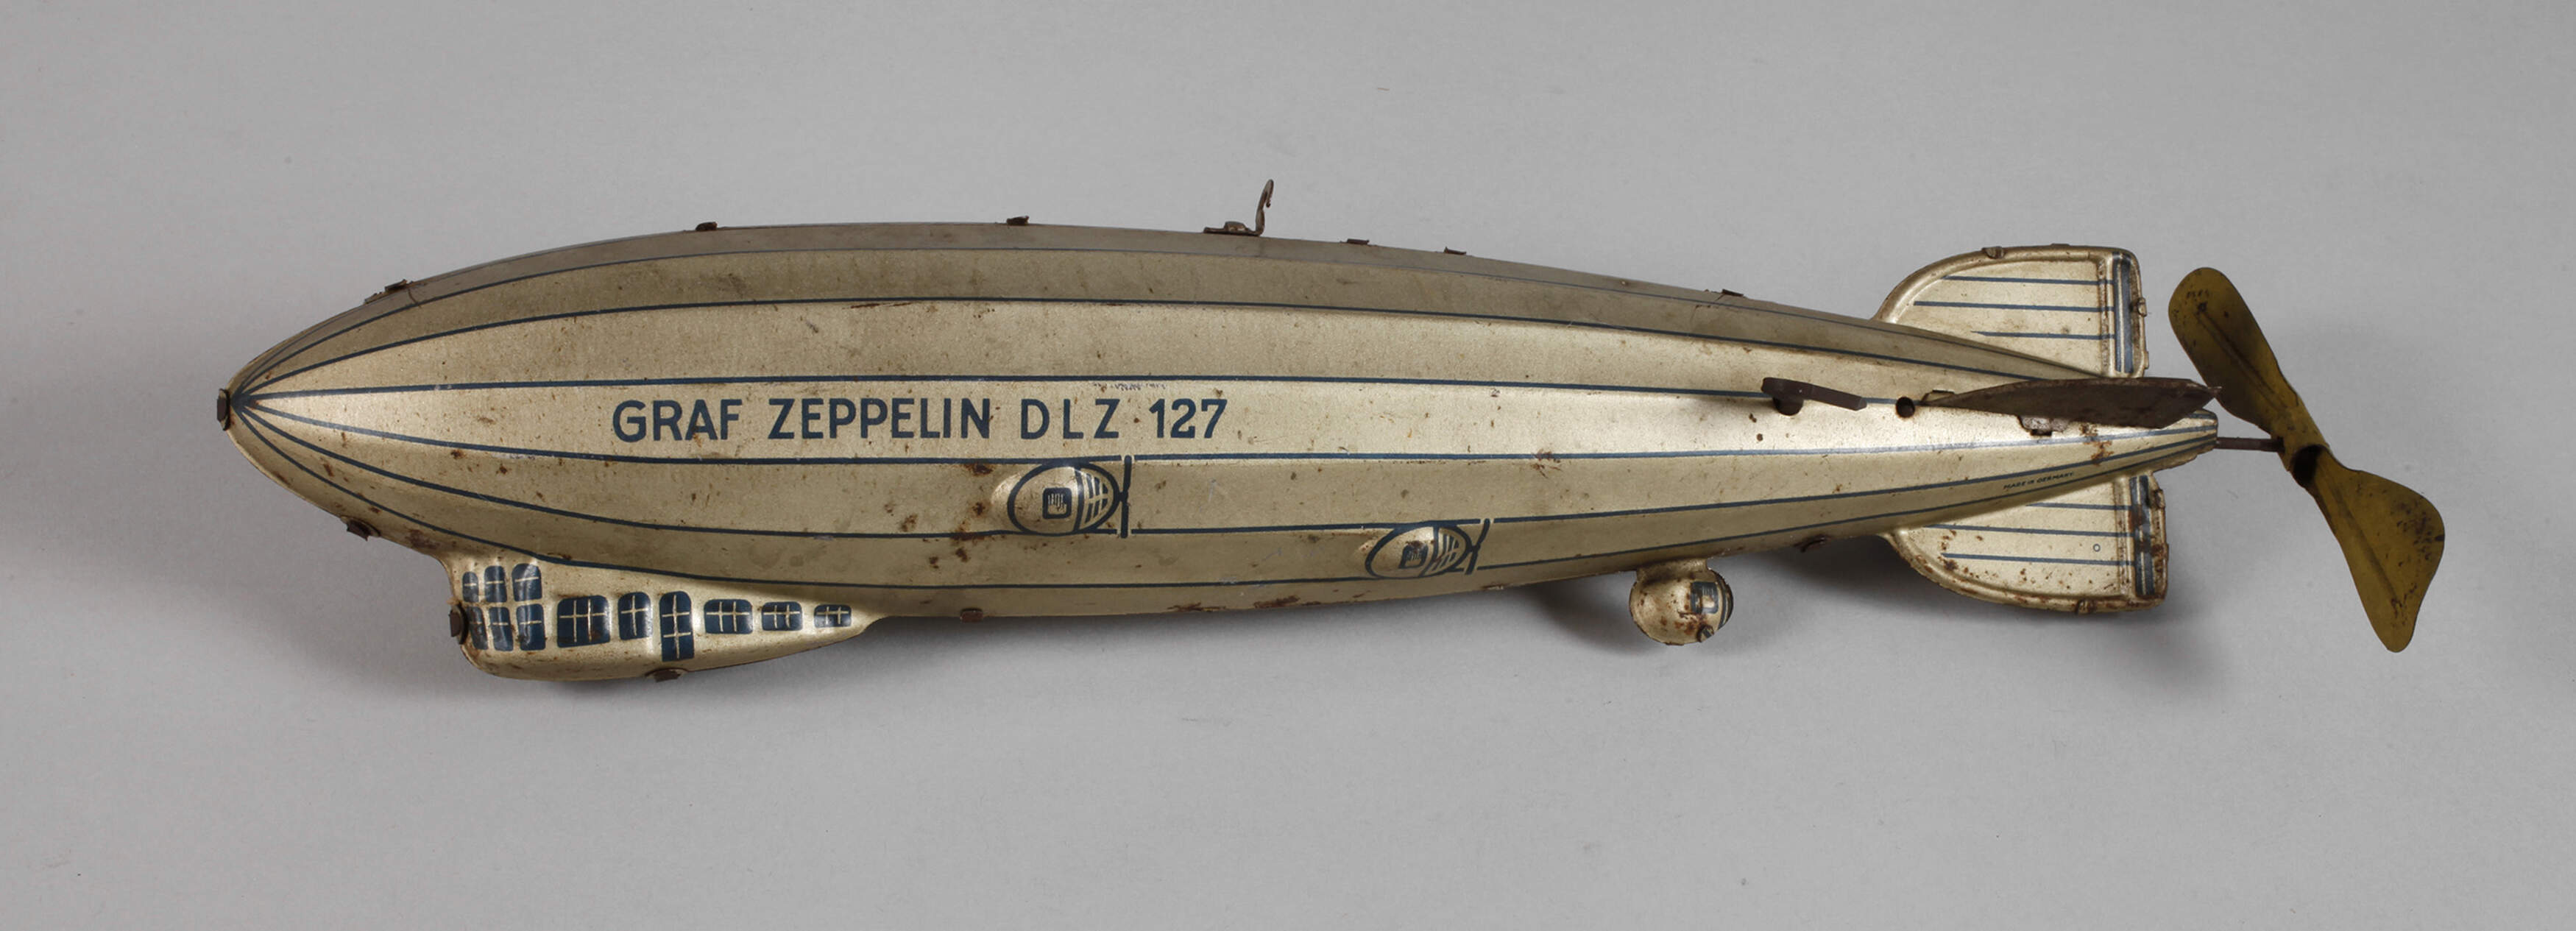 Tippco Luftschiff "Graf Zeppelin DLZ 127"